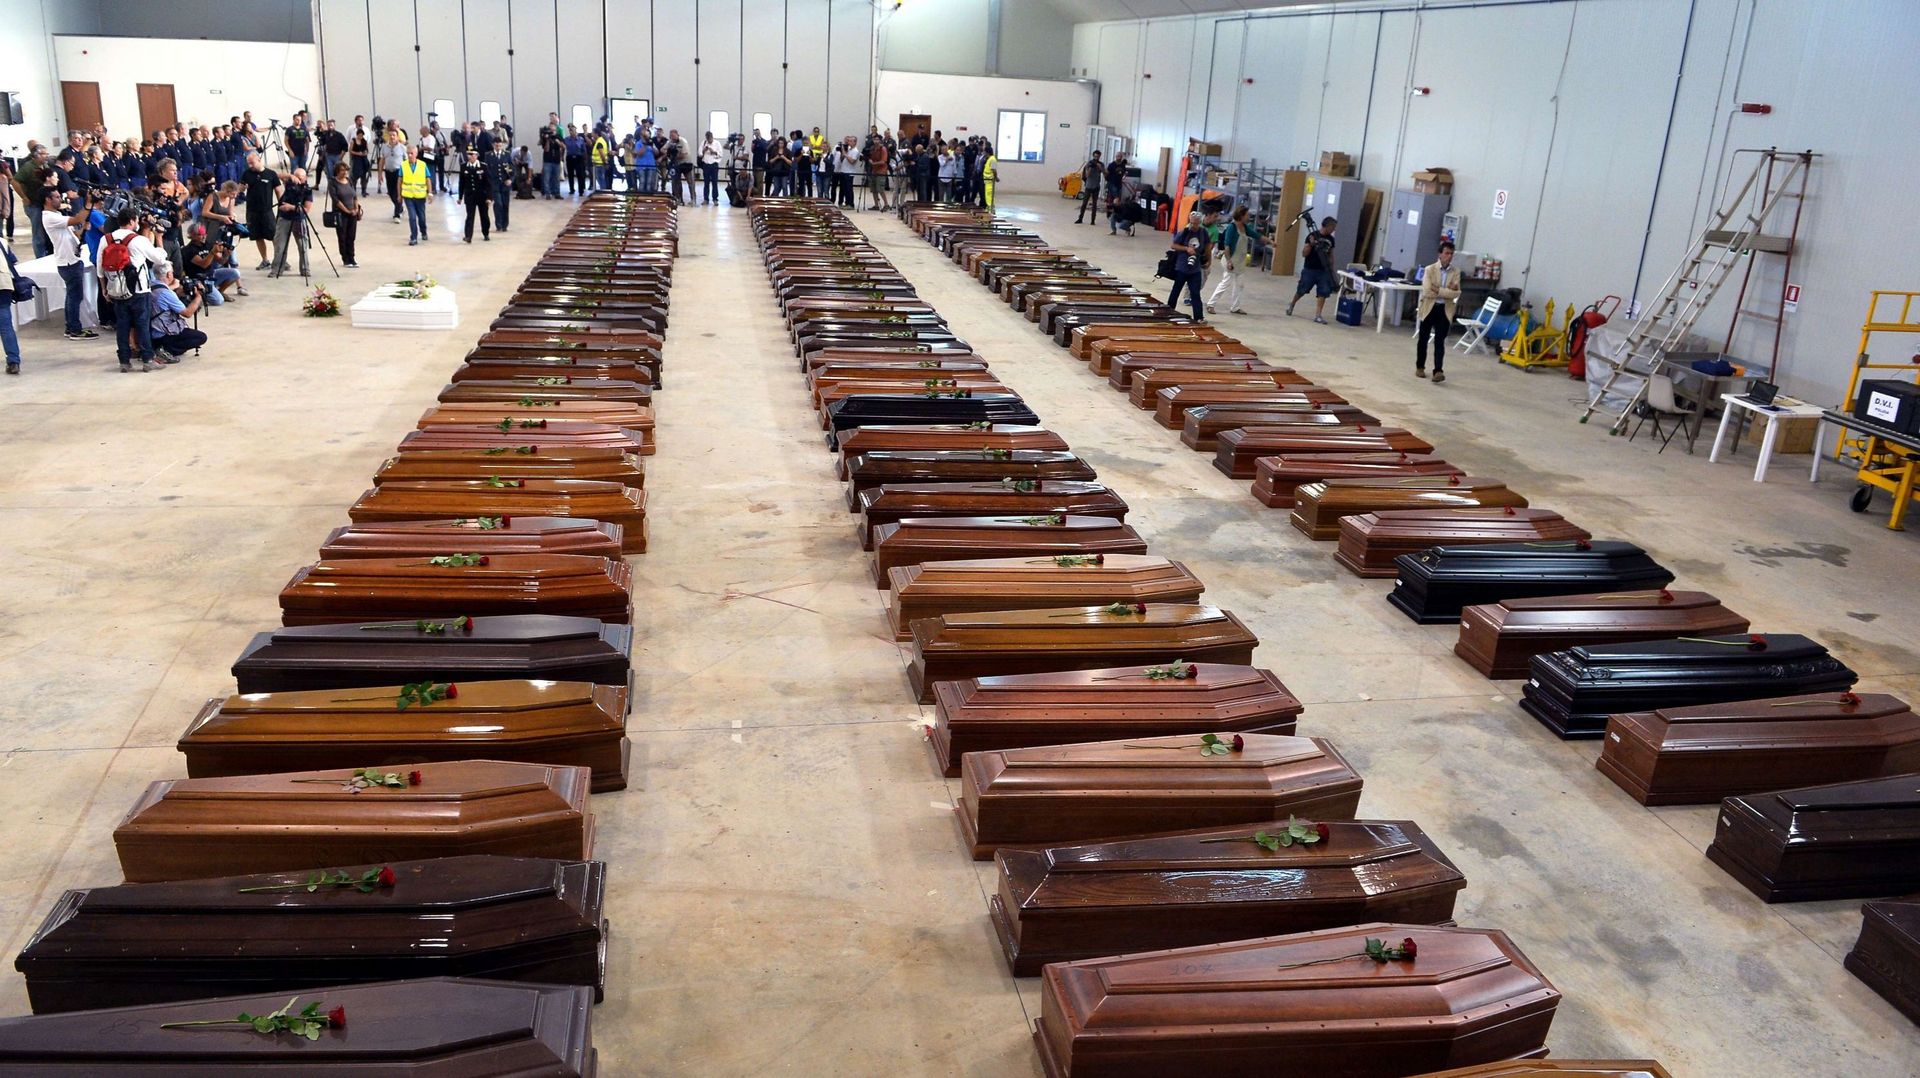 Plus de 300 personnes sont mortes en octobre dernier au large de Lampedusa